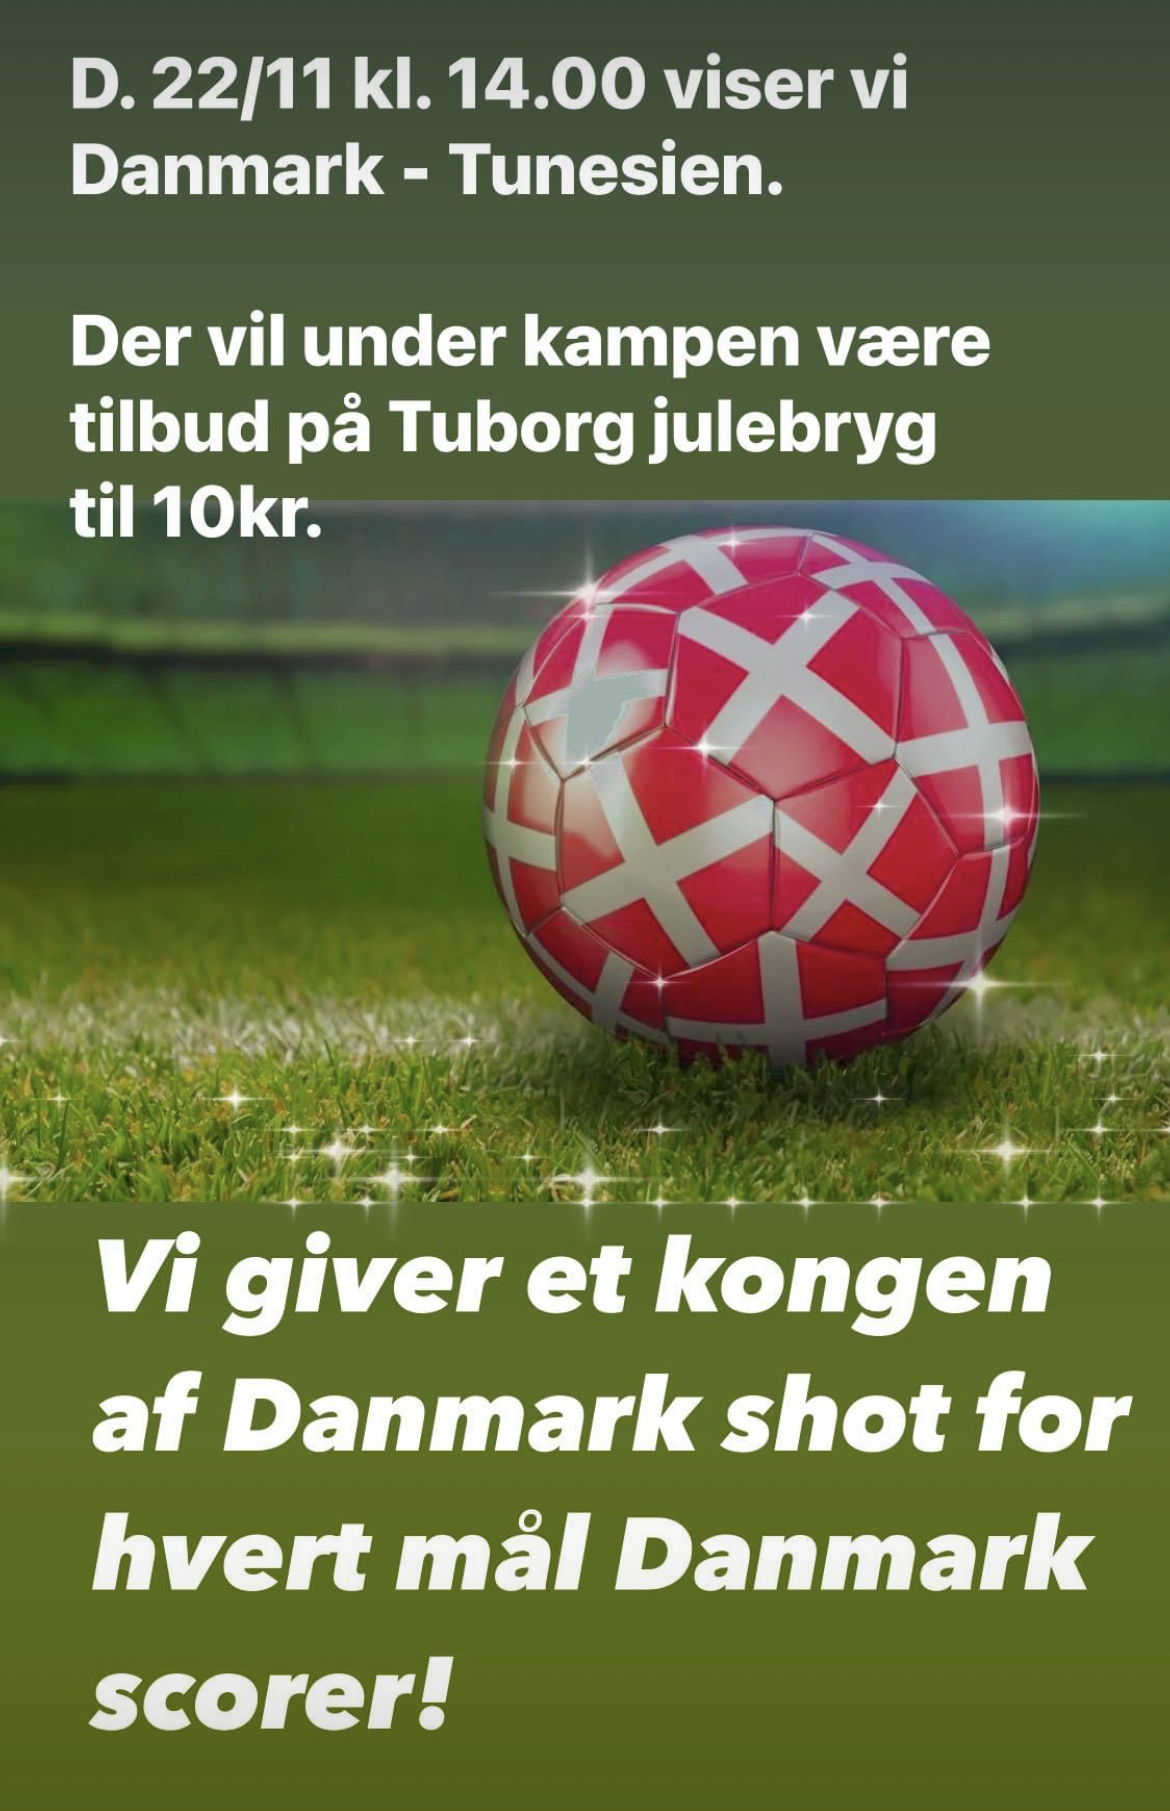 Her kan du se Danmarks VM-kampe - Skagen